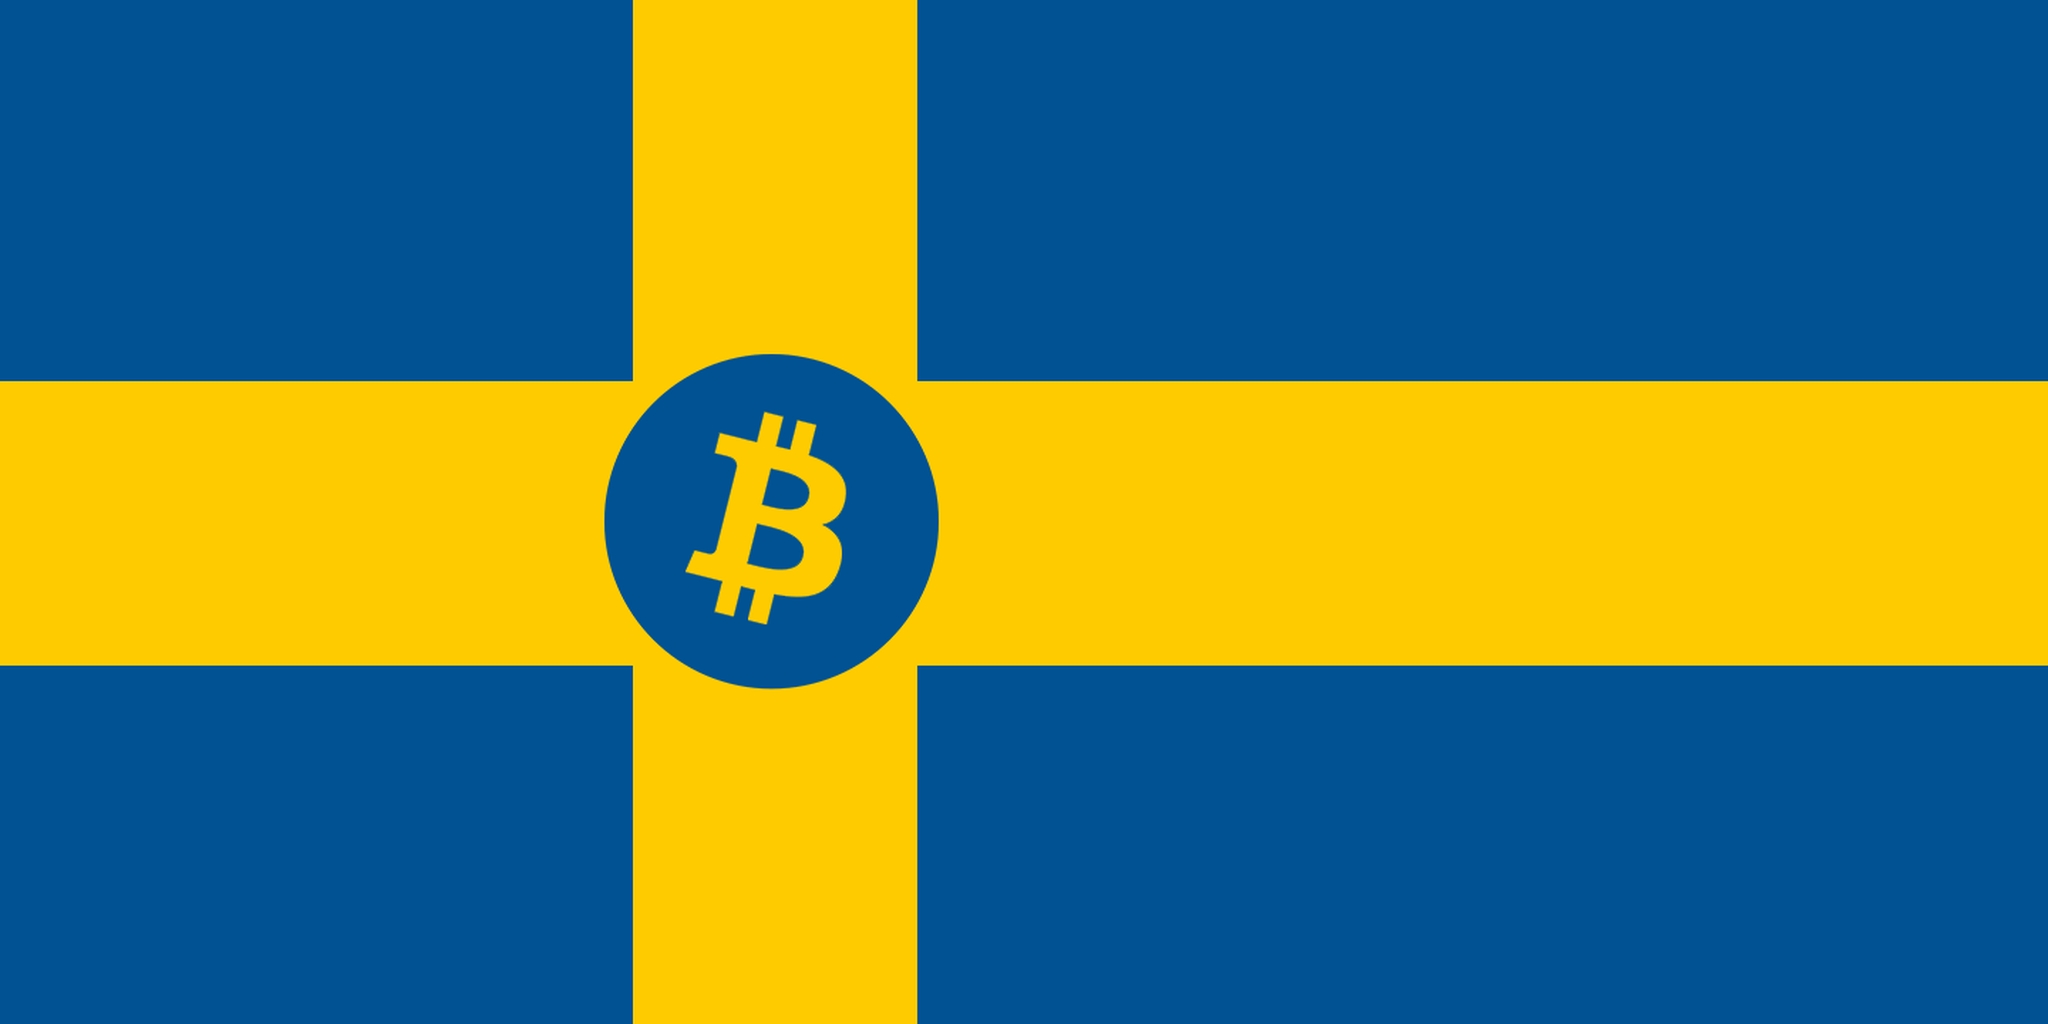 کشور سوئد بعنوان پیشروترین کشور غیر پولی اسکاندیناوی از طریق بیتکوین شناخته شد